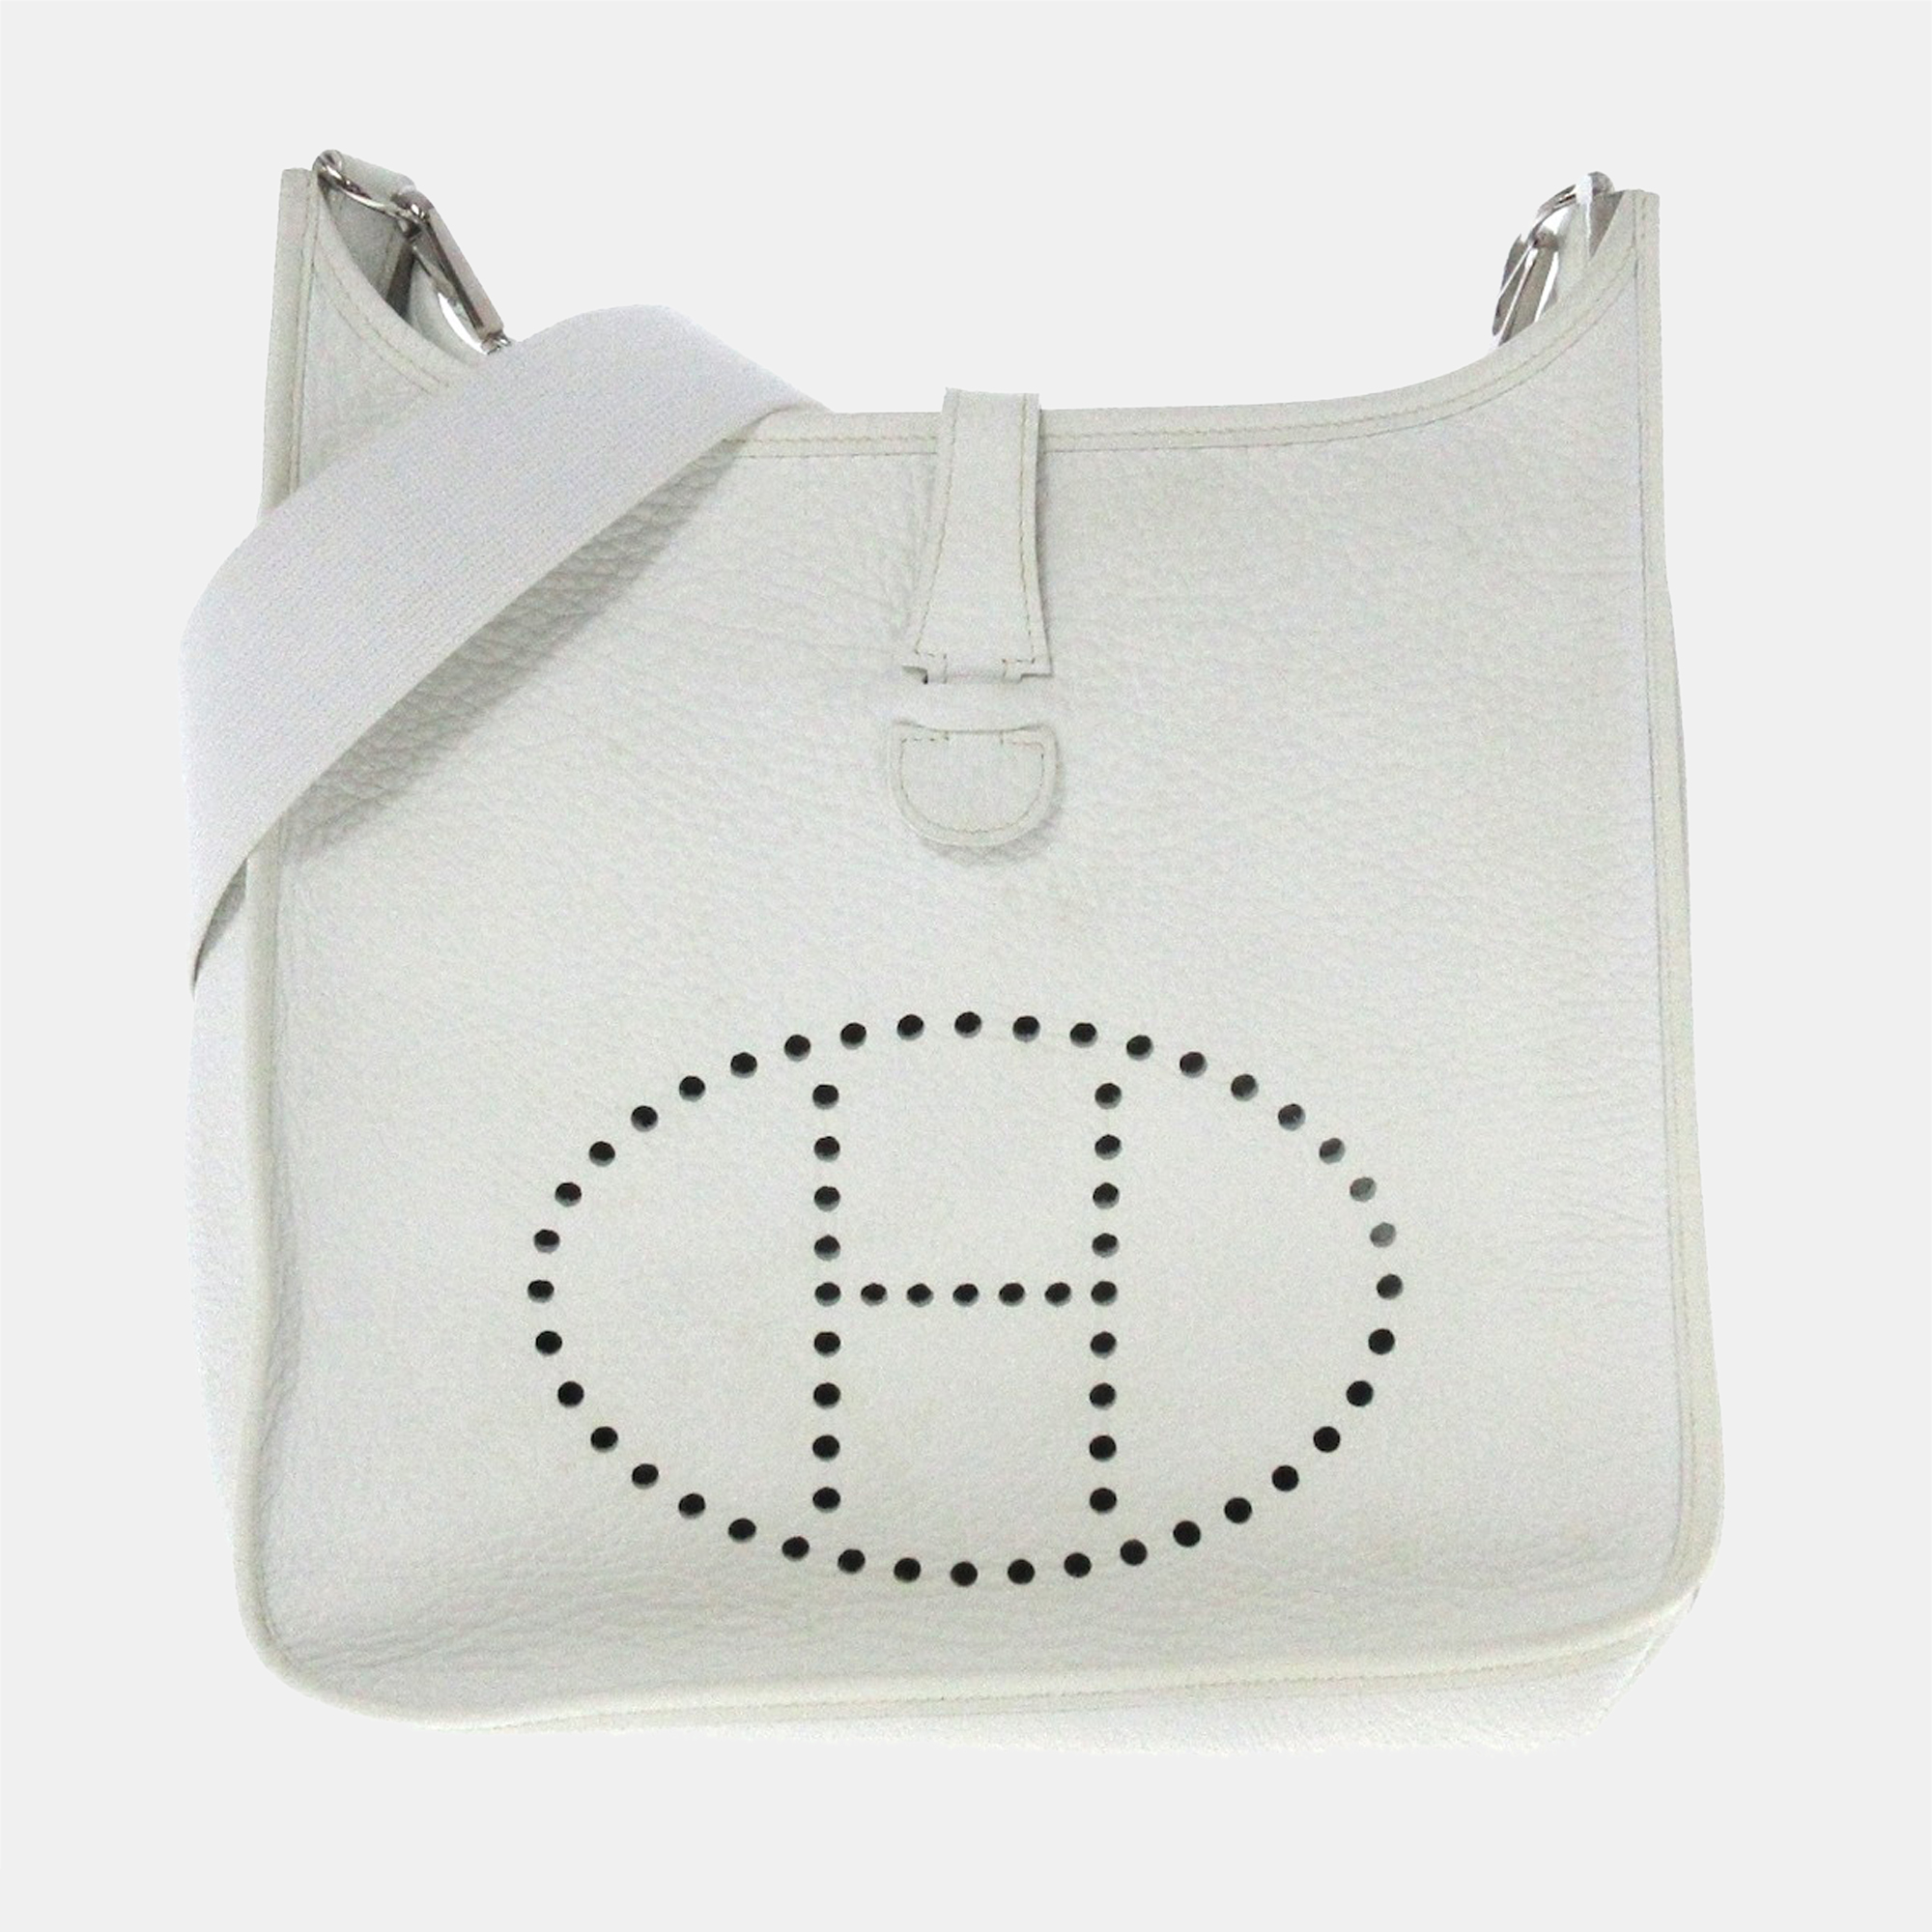 Hermes White Clemence Leather Evelyne Shoulder Bag